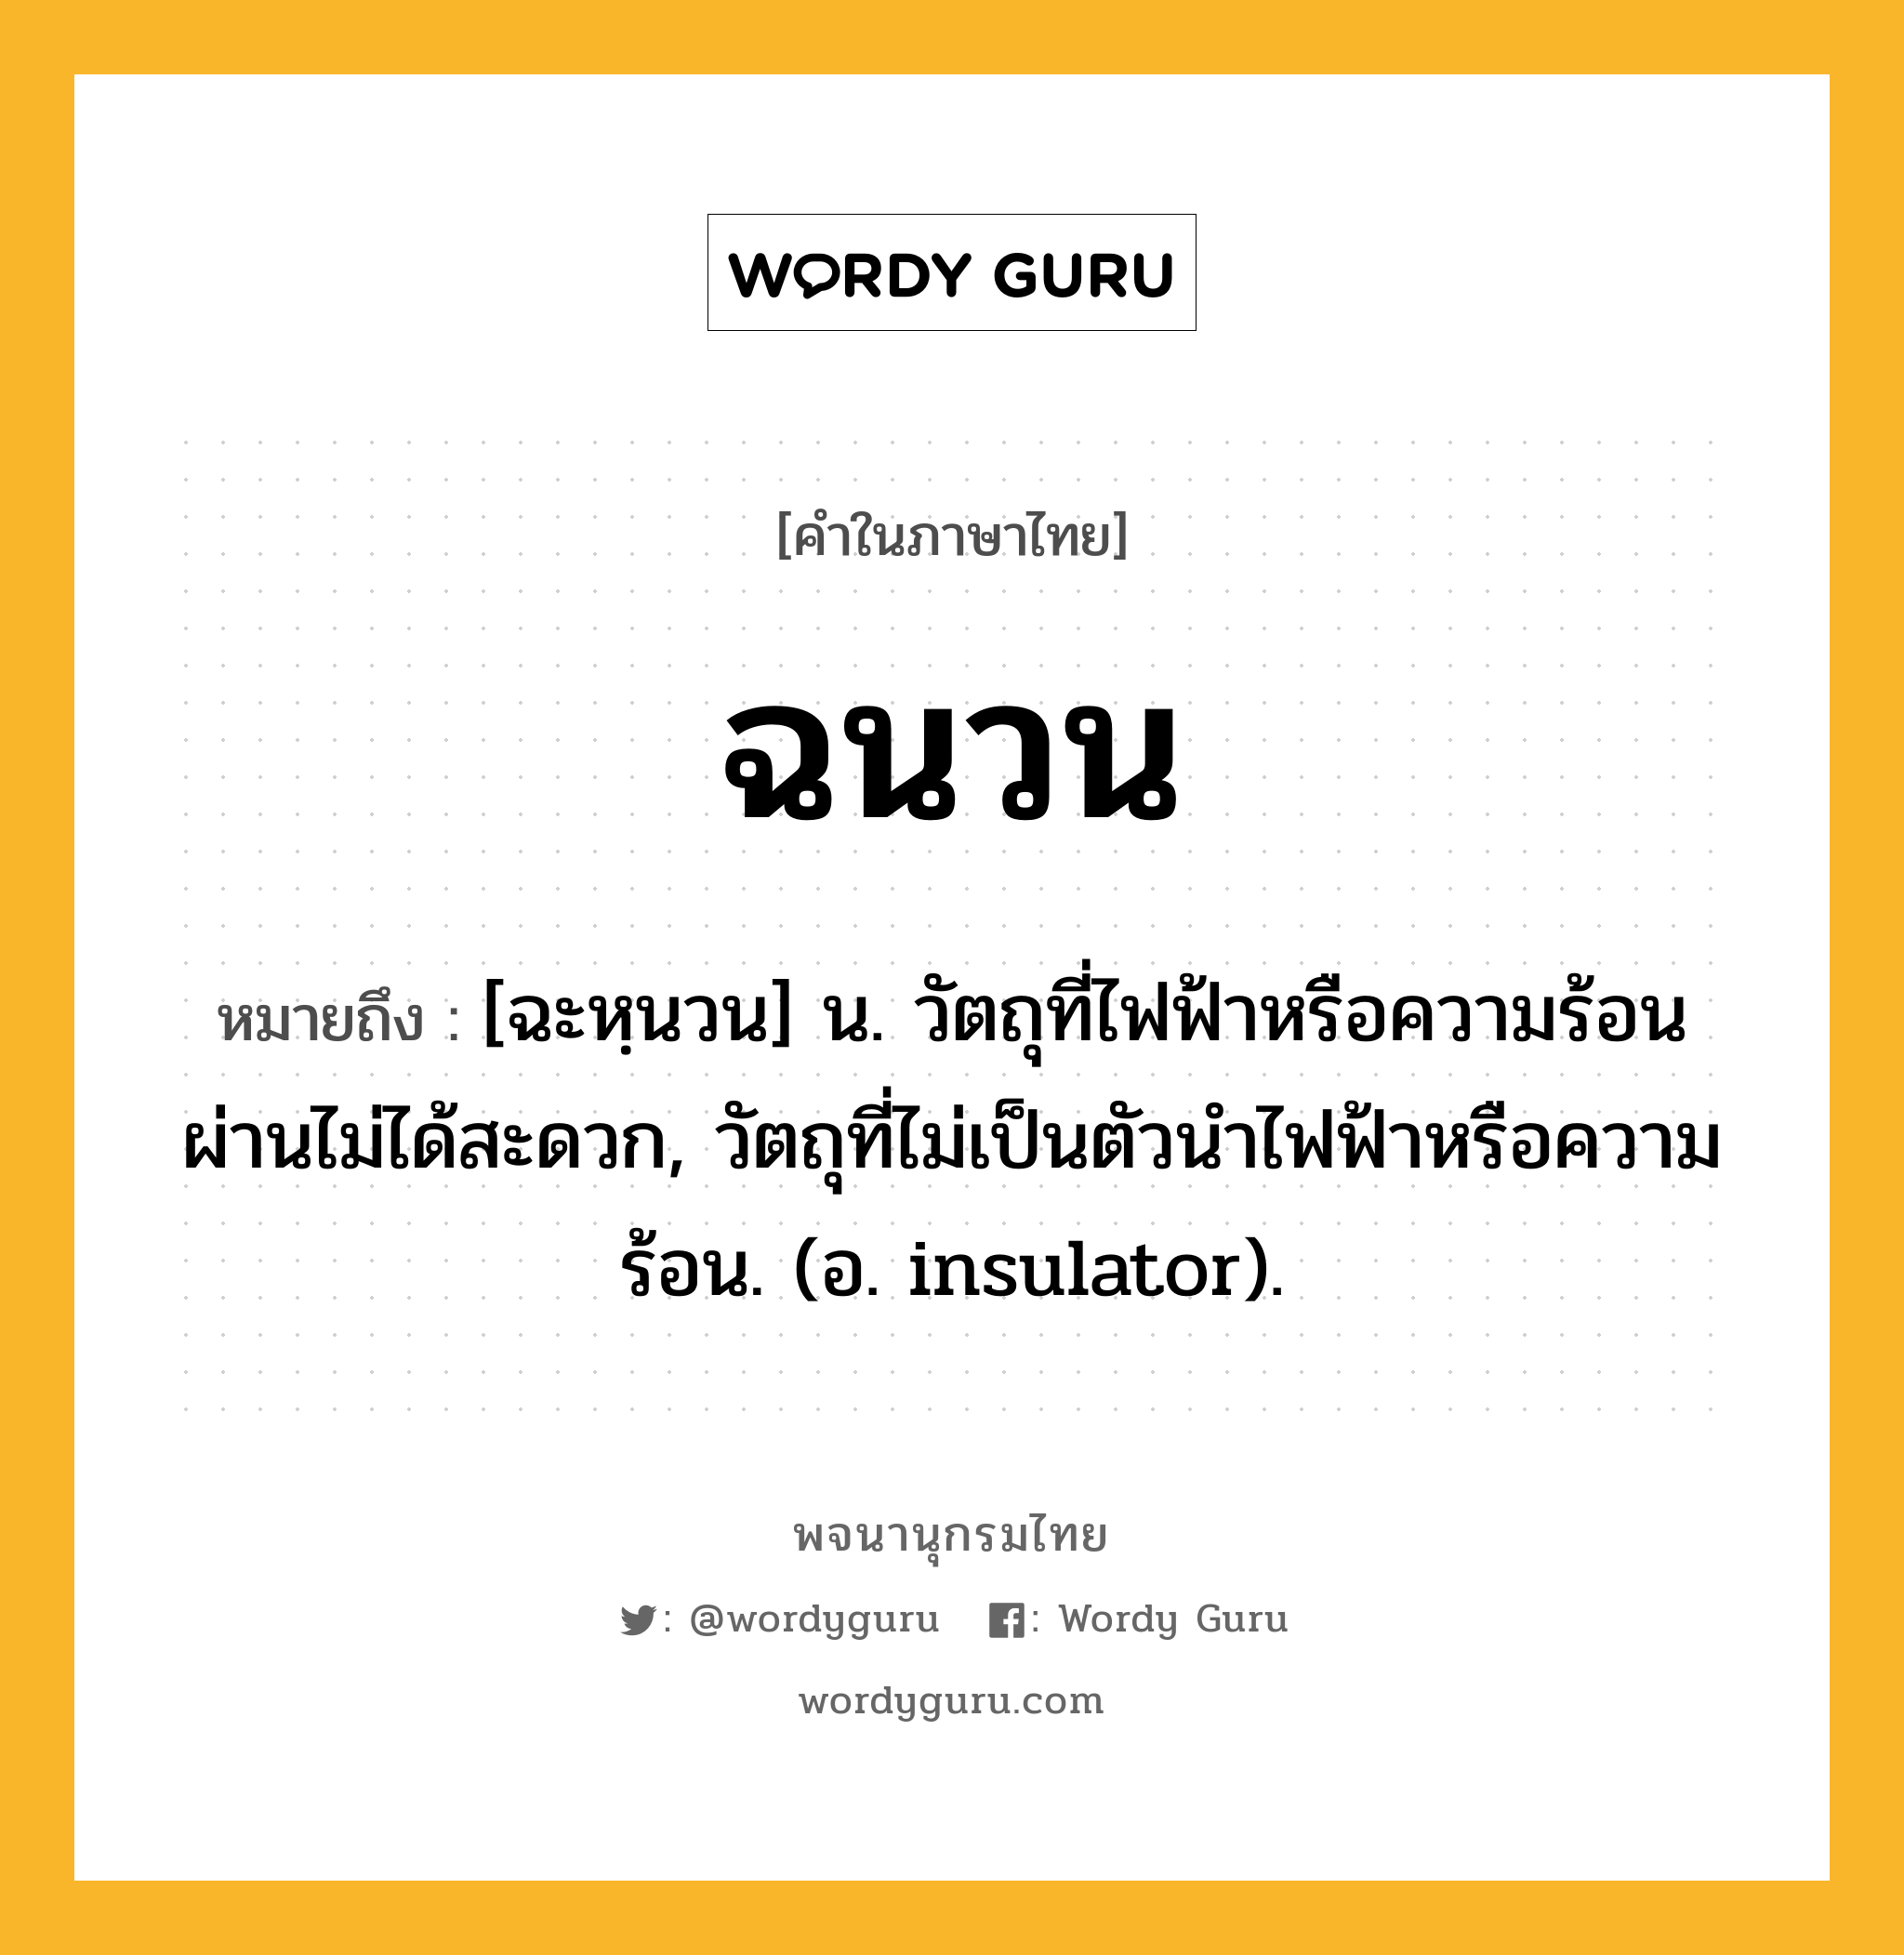 ฉนวน ความหมาย หมายถึงอะไร?, คำในภาษาไทย ฉนวน หมายถึง [ฉะหฺนวน] น. วัตถุที่ไฟฟ้าหรือความร้อนผ่านไม่ได้สะดวก, วัตถุที่ไม่เป็นตัวนําไฟฟ้าหรือความร้อน. (อ. insulator).